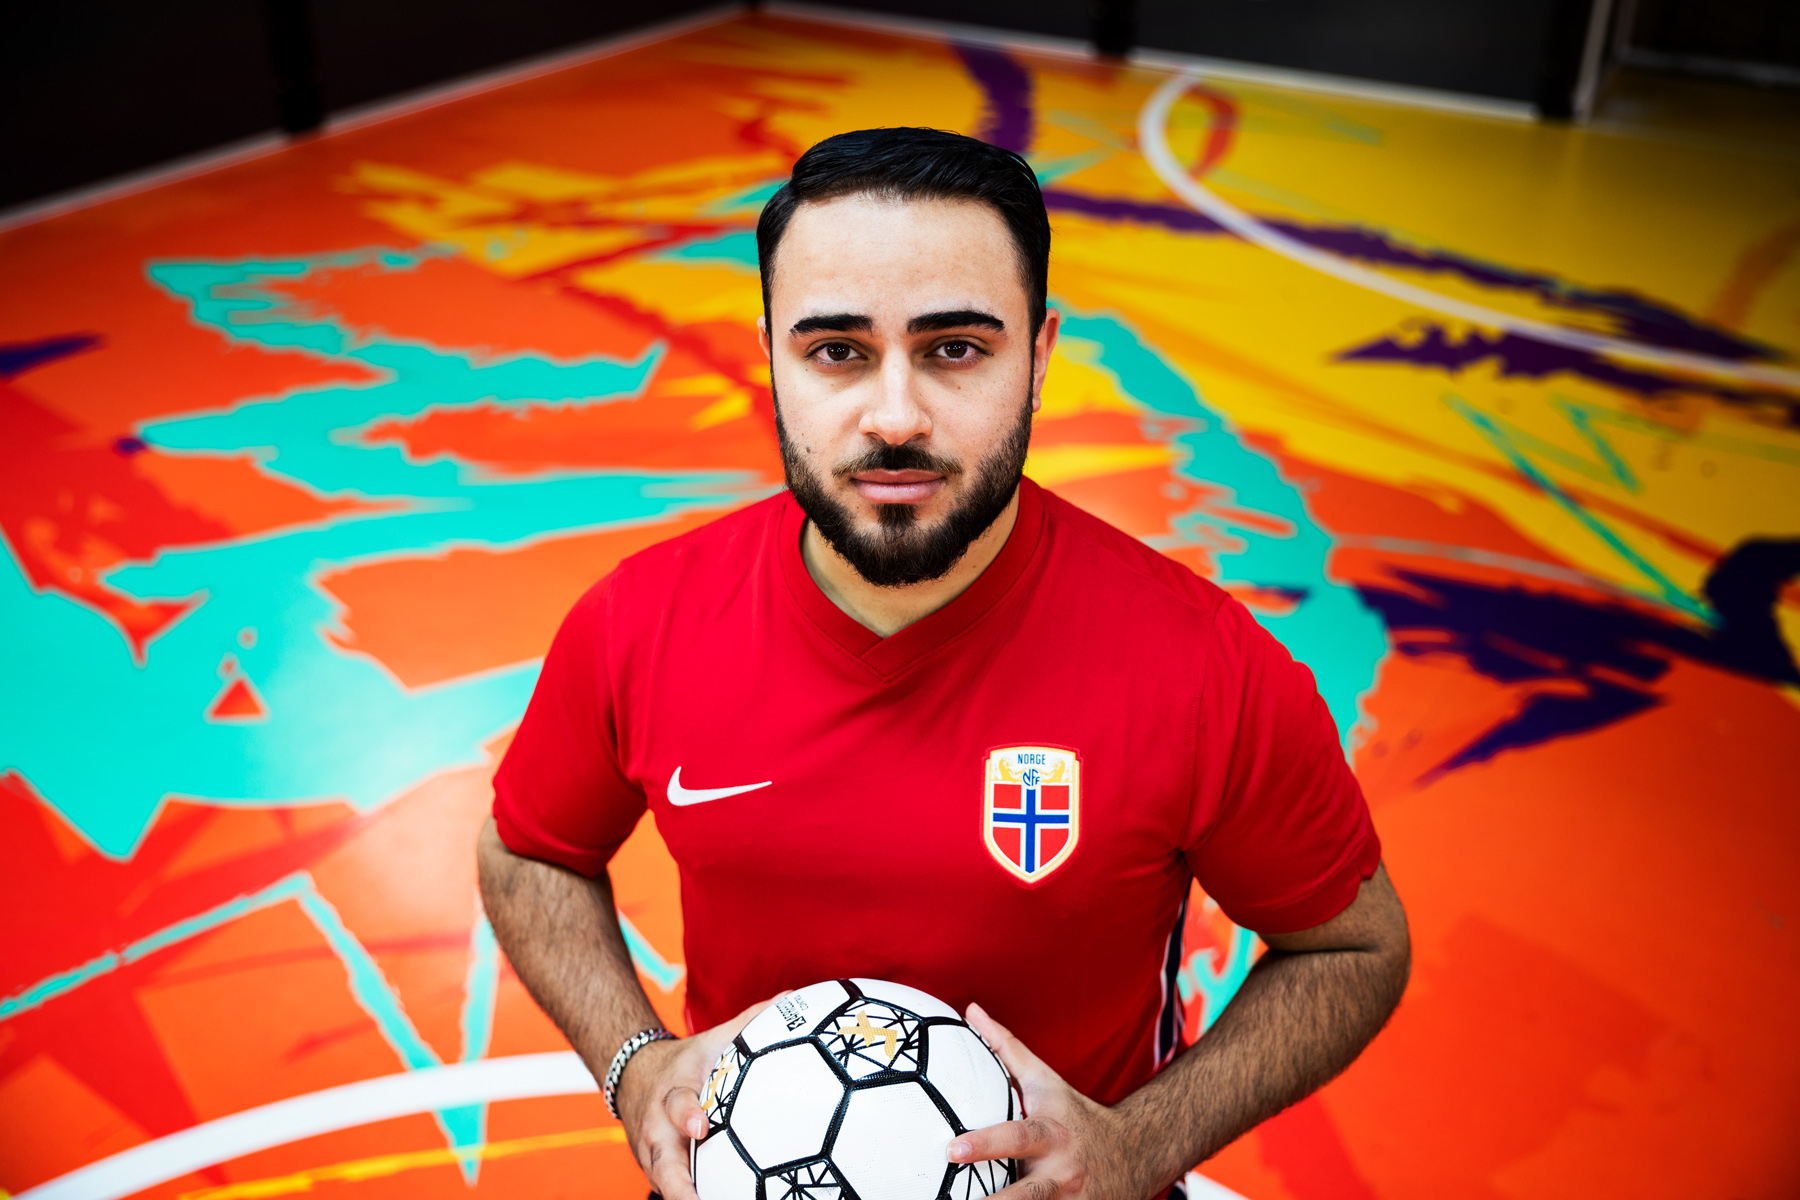 Bilde av Arkan som står inne på en fargerik fotballbane i Oslo Street Football Center